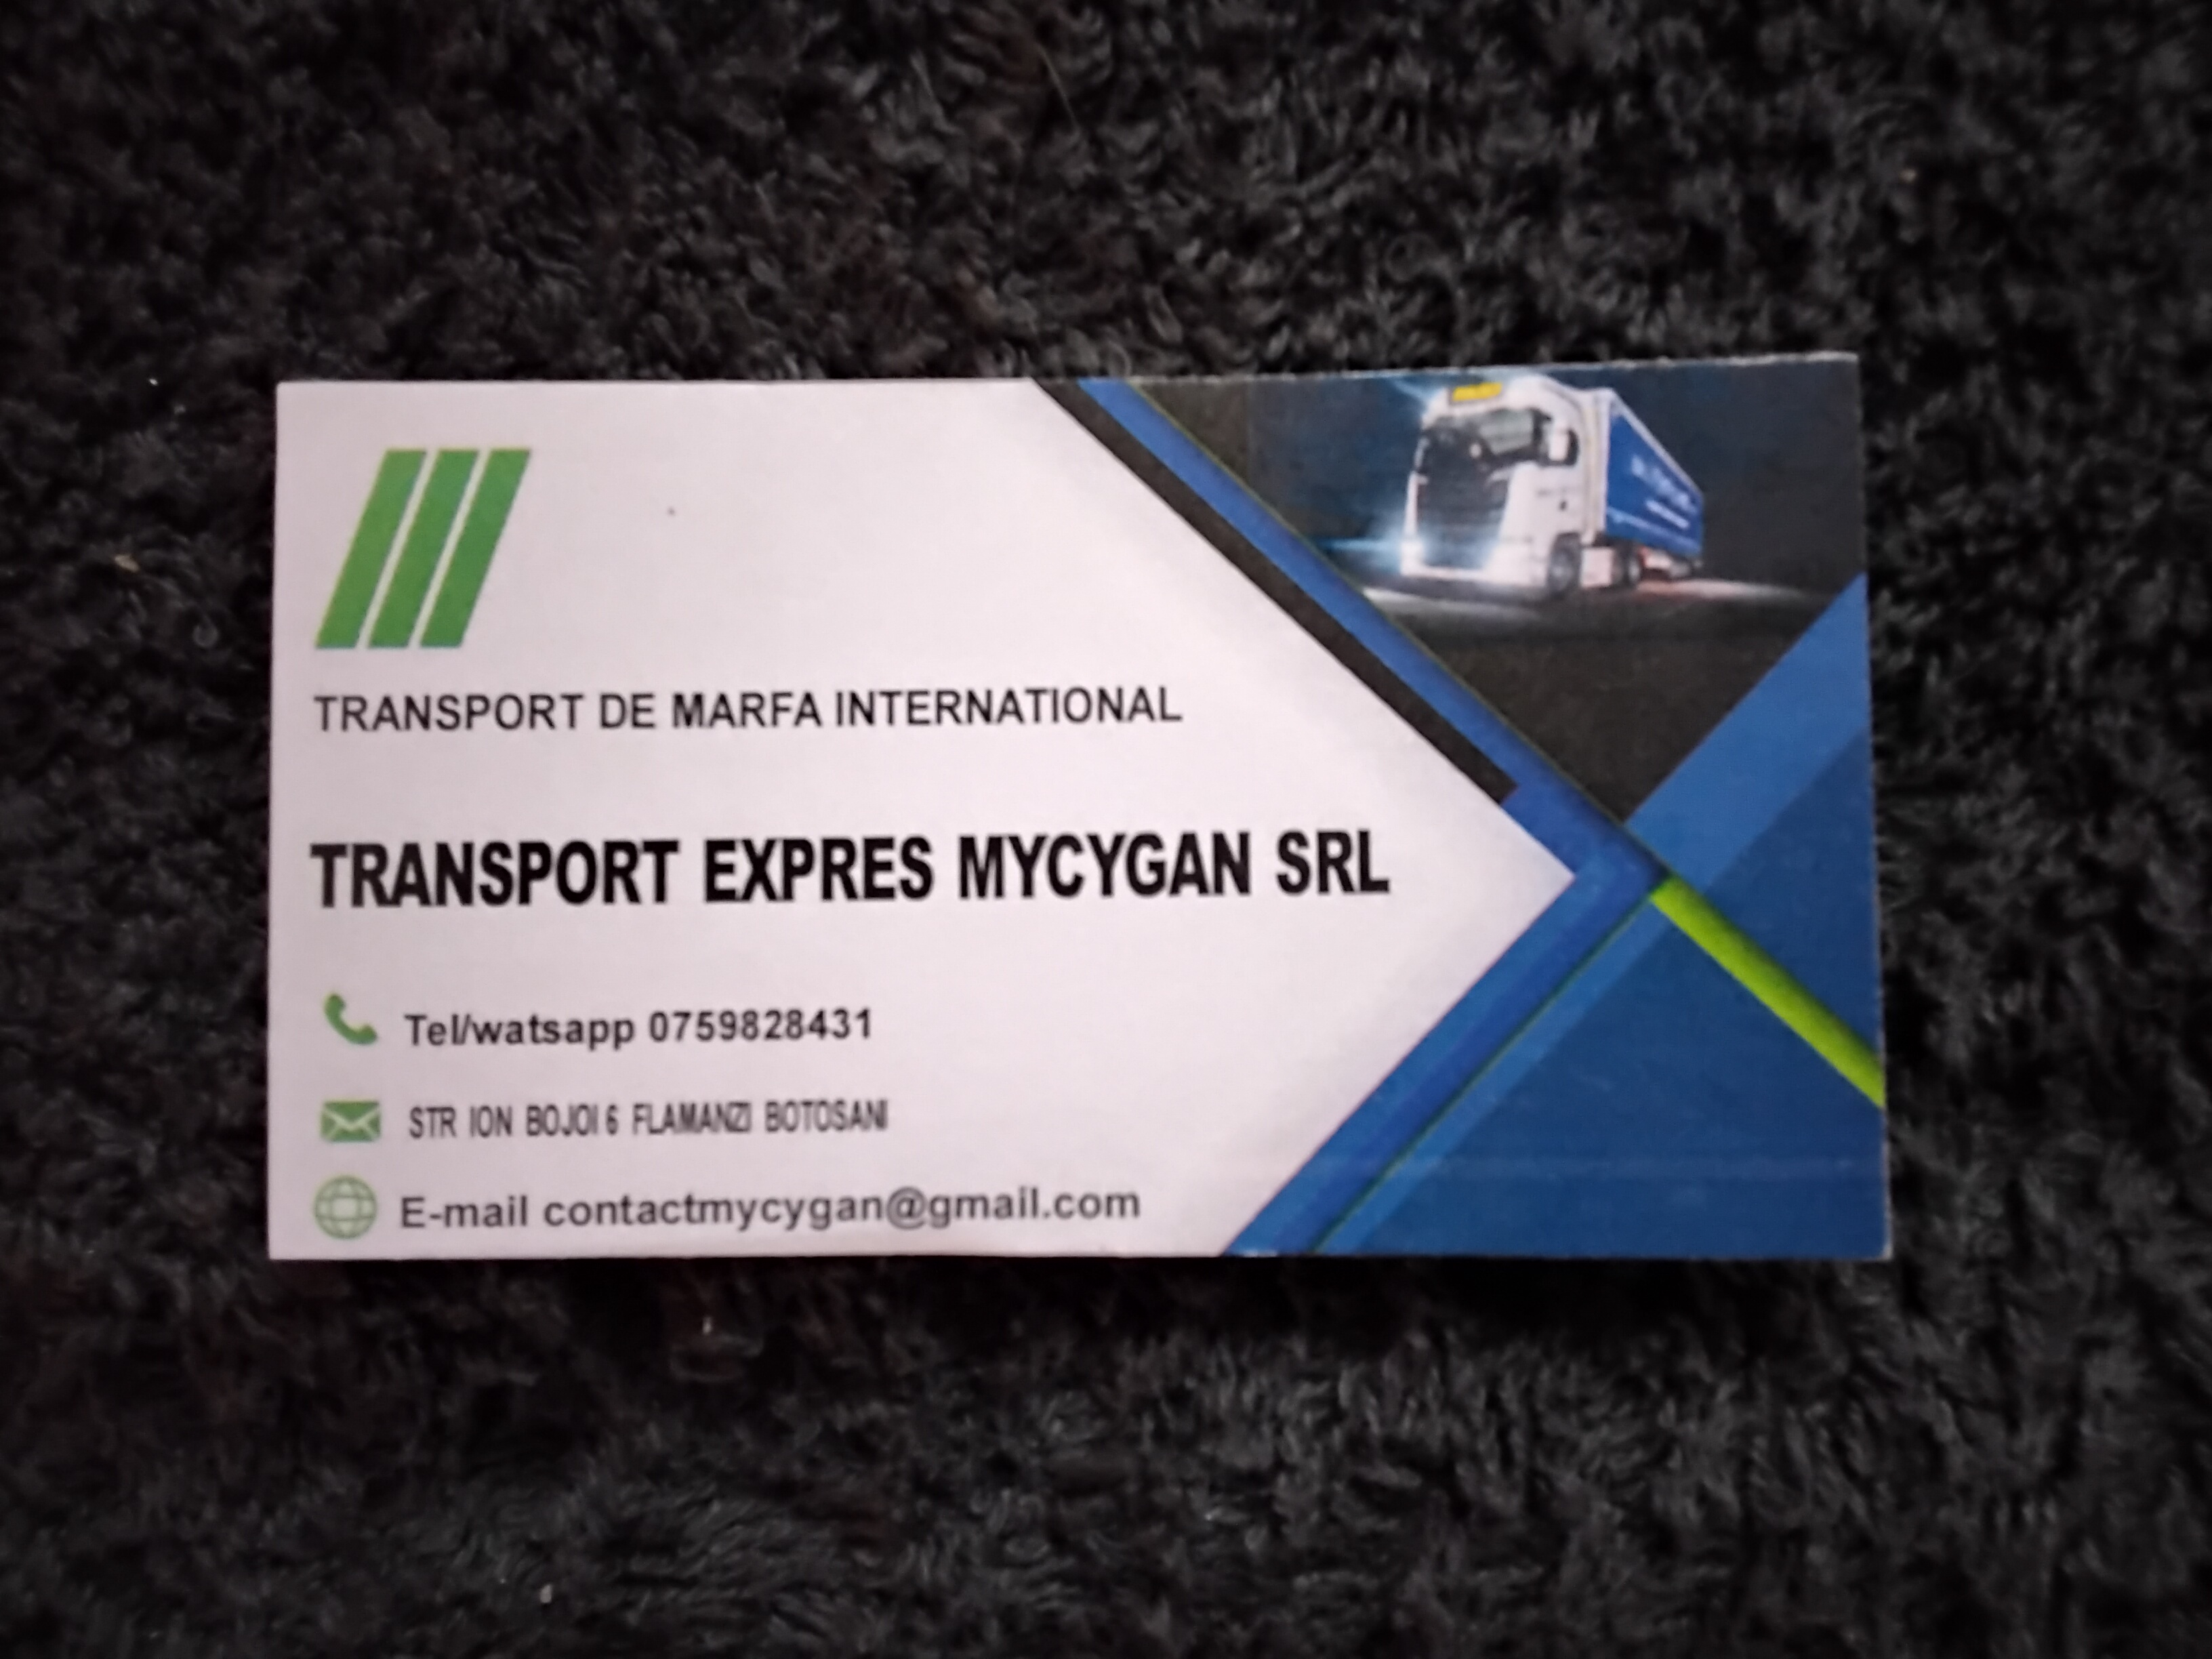 Transport Expres Mycygan srl